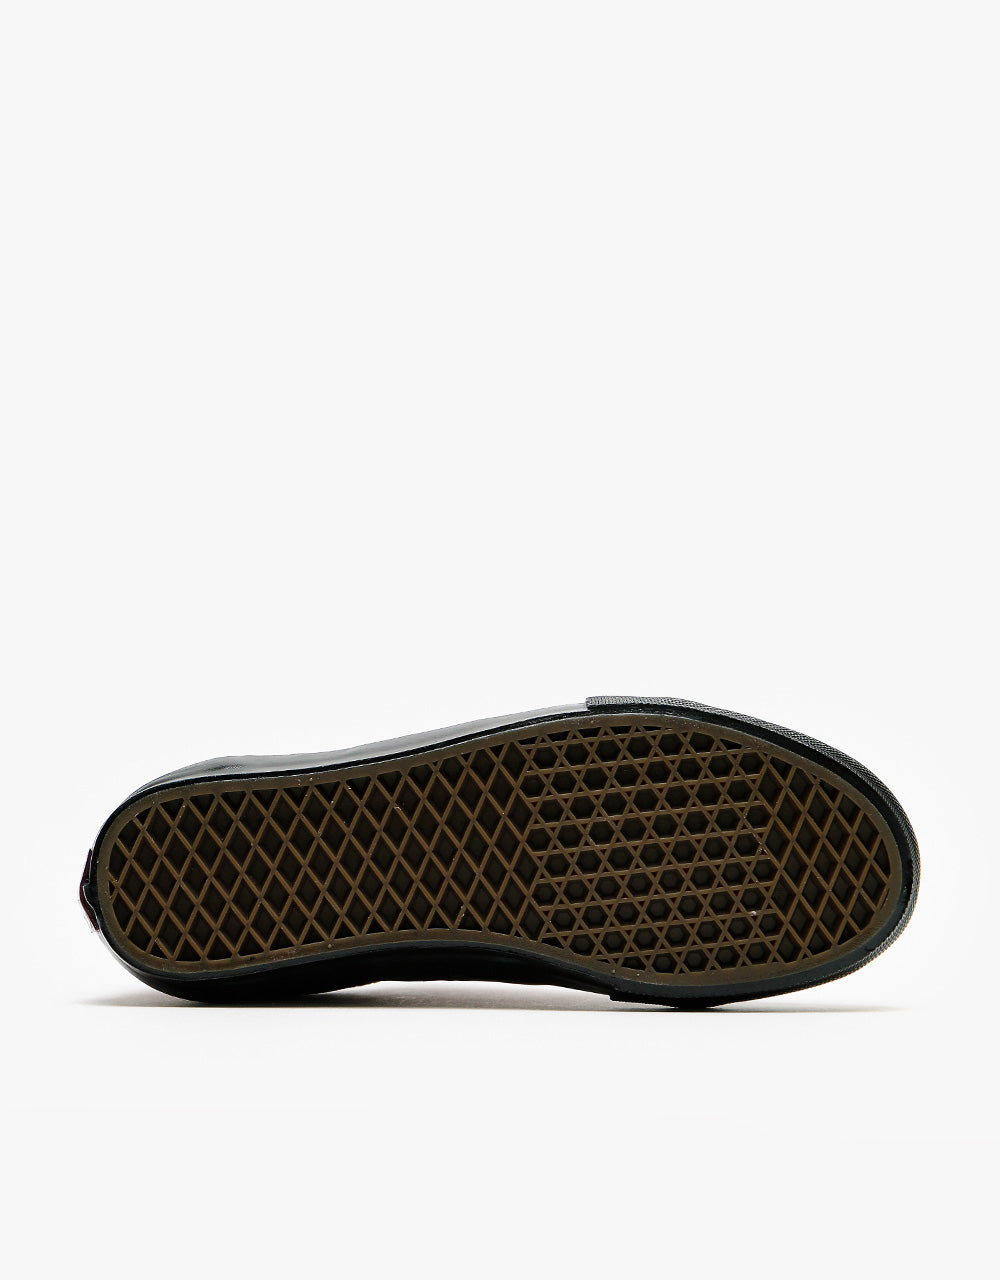 Vans Skate Old Skool Shoes - (Breana Geering) Port/Black